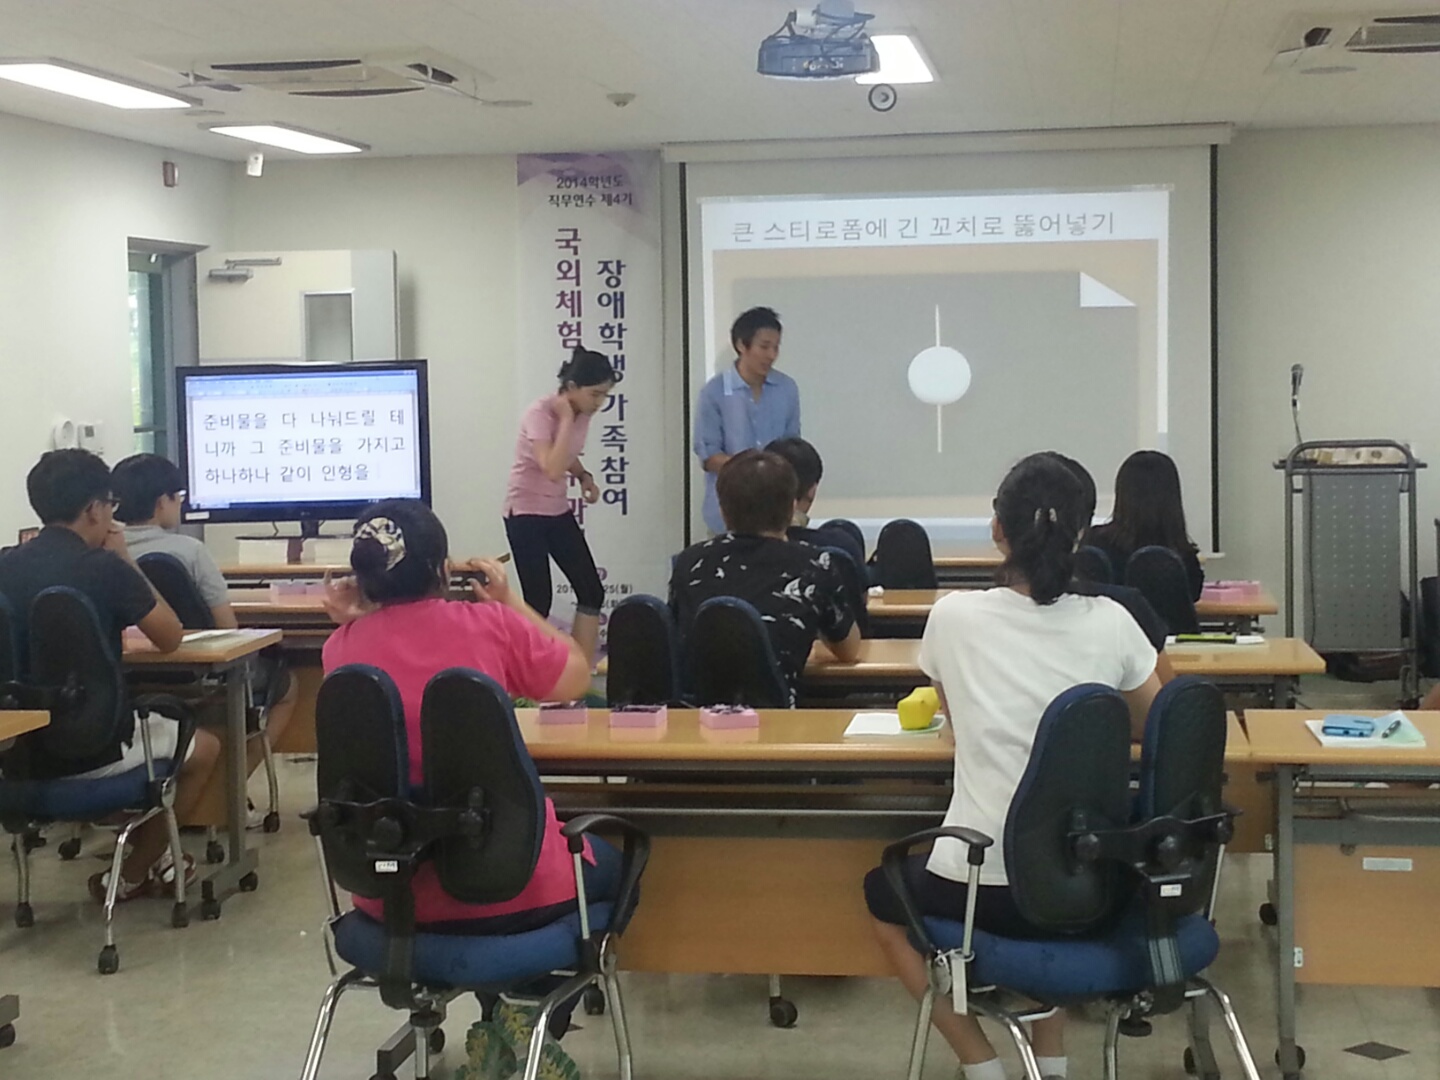 IMG_5328[1].JPG : 2014.8.25 국립특수교육원 STEAM 프로그램 진행